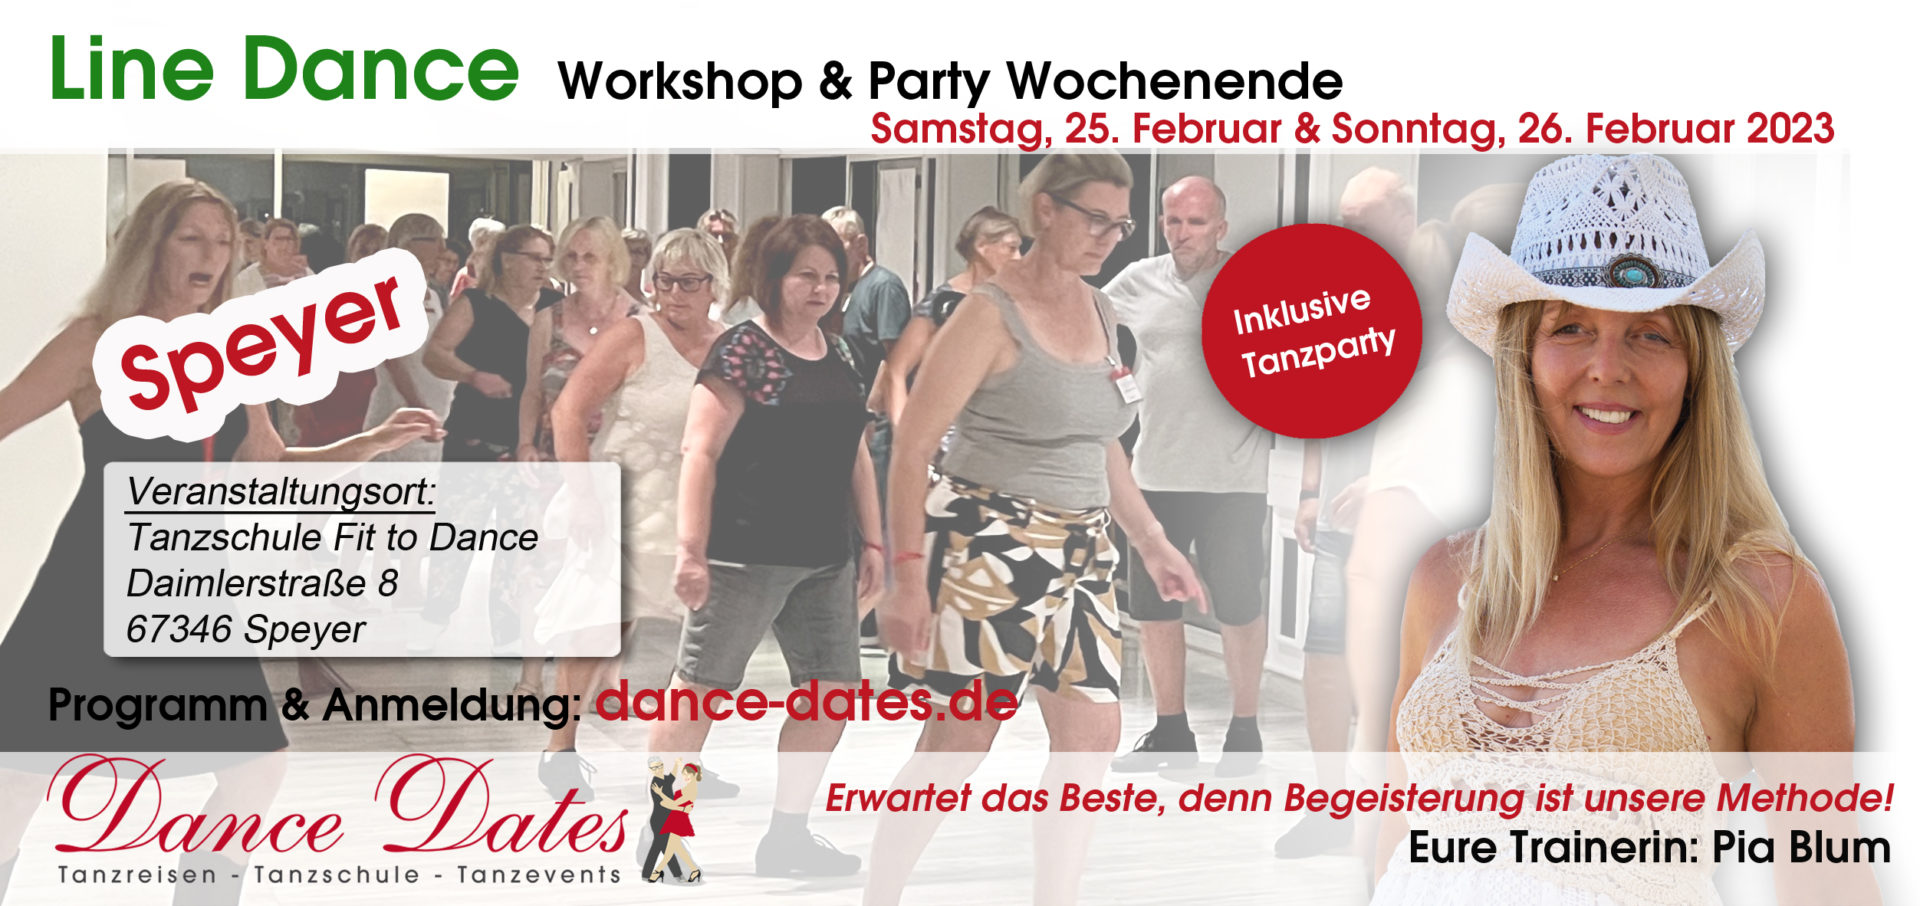 Line Dance Workshop & Party Wochenende in Speyer